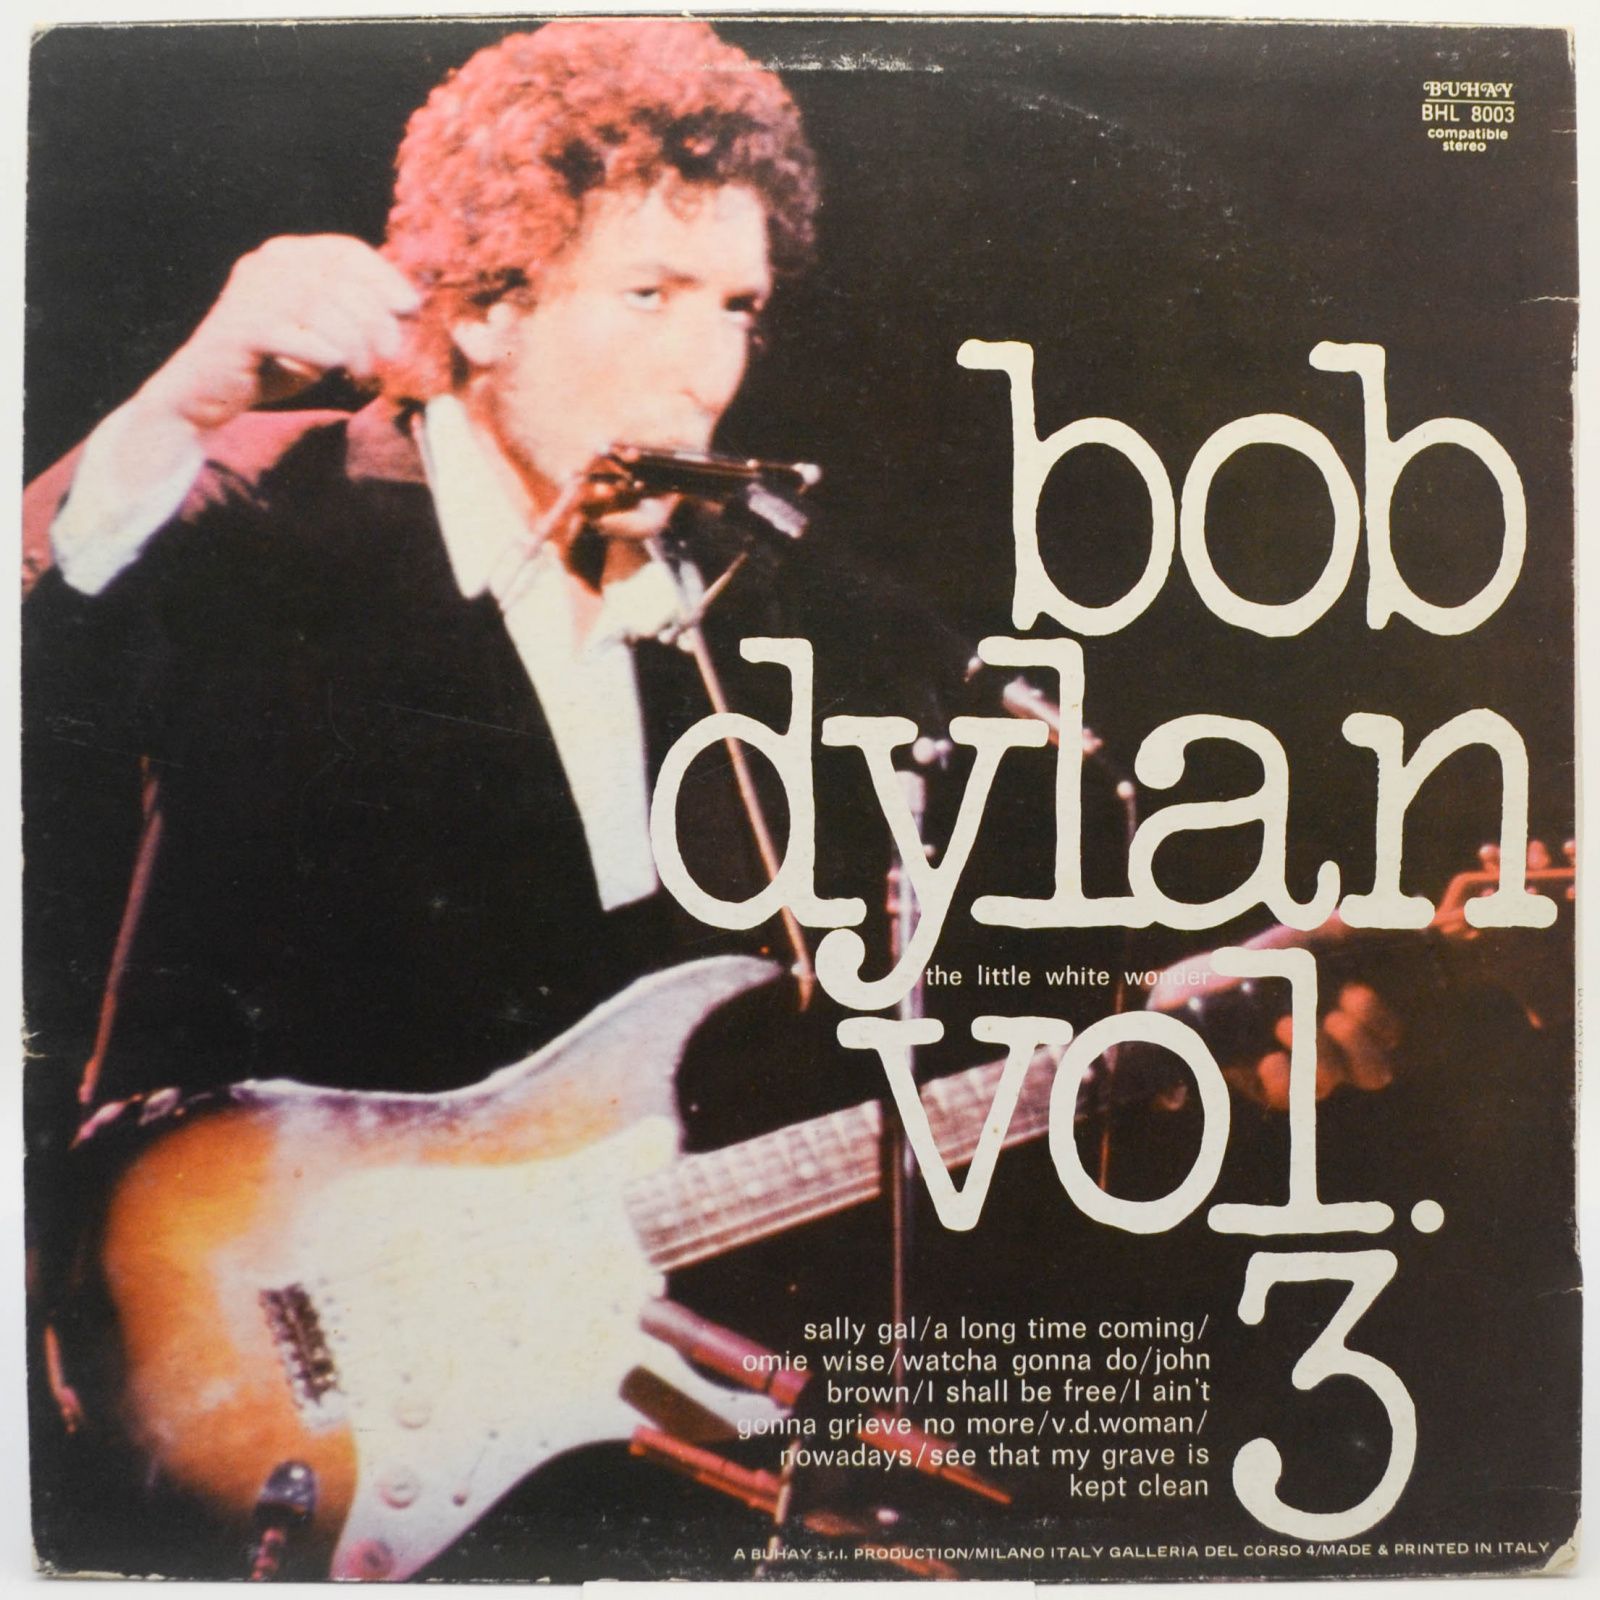 Bob Dylan — The Little White Wonder — Volume 3, 1975